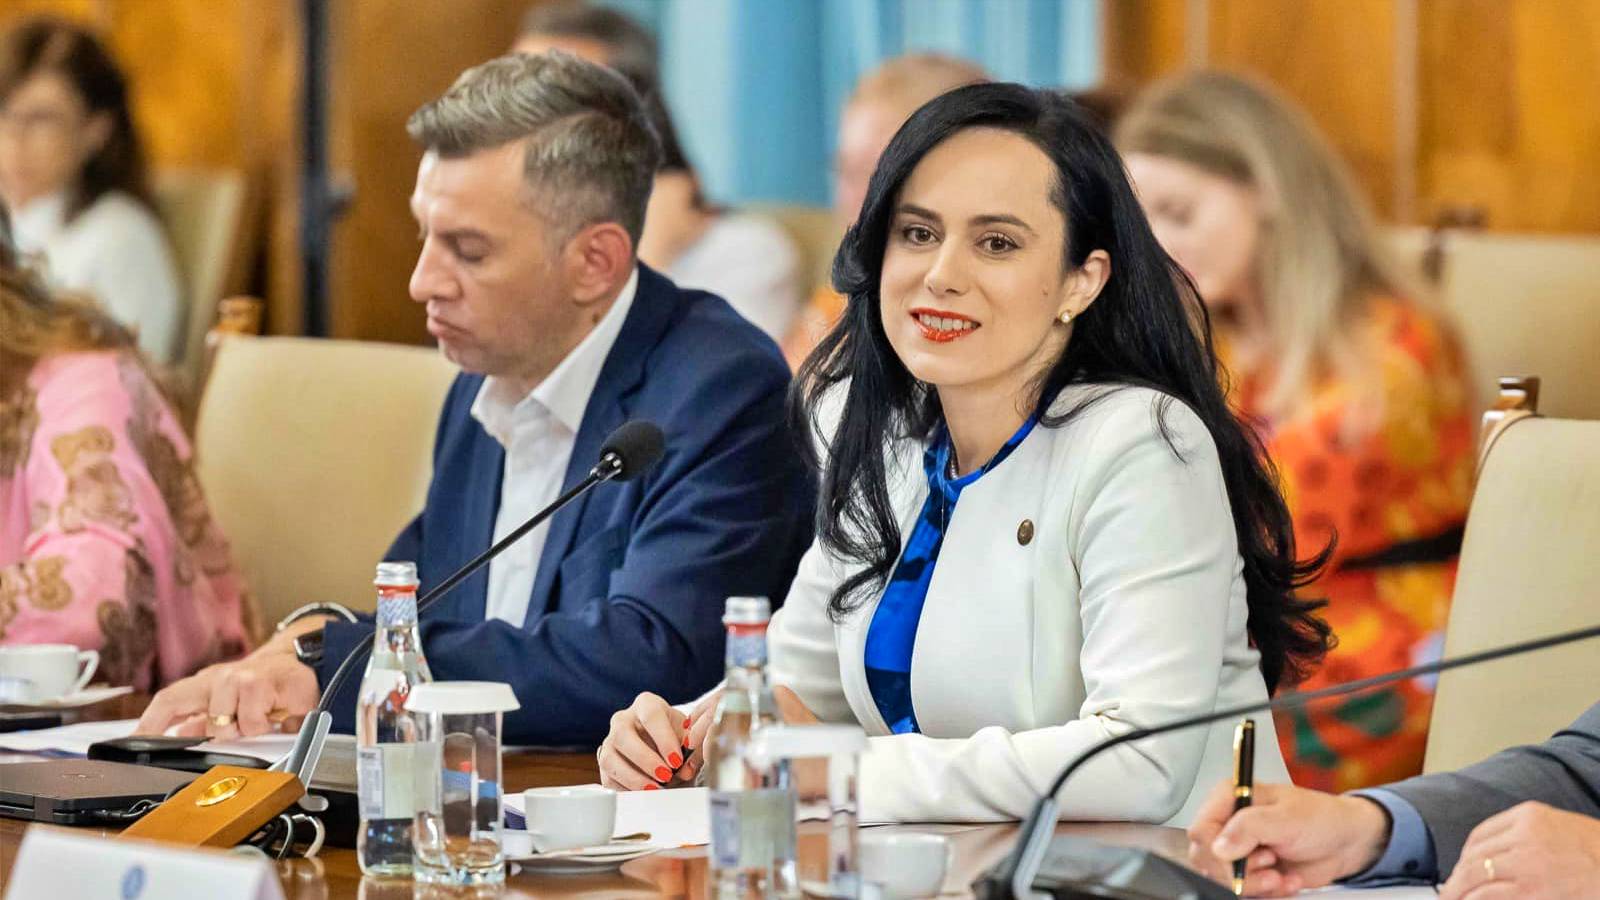 Ministre du Travail DERNIER MOMENT Décision officielle du gouvernement de Roumanie Roumains